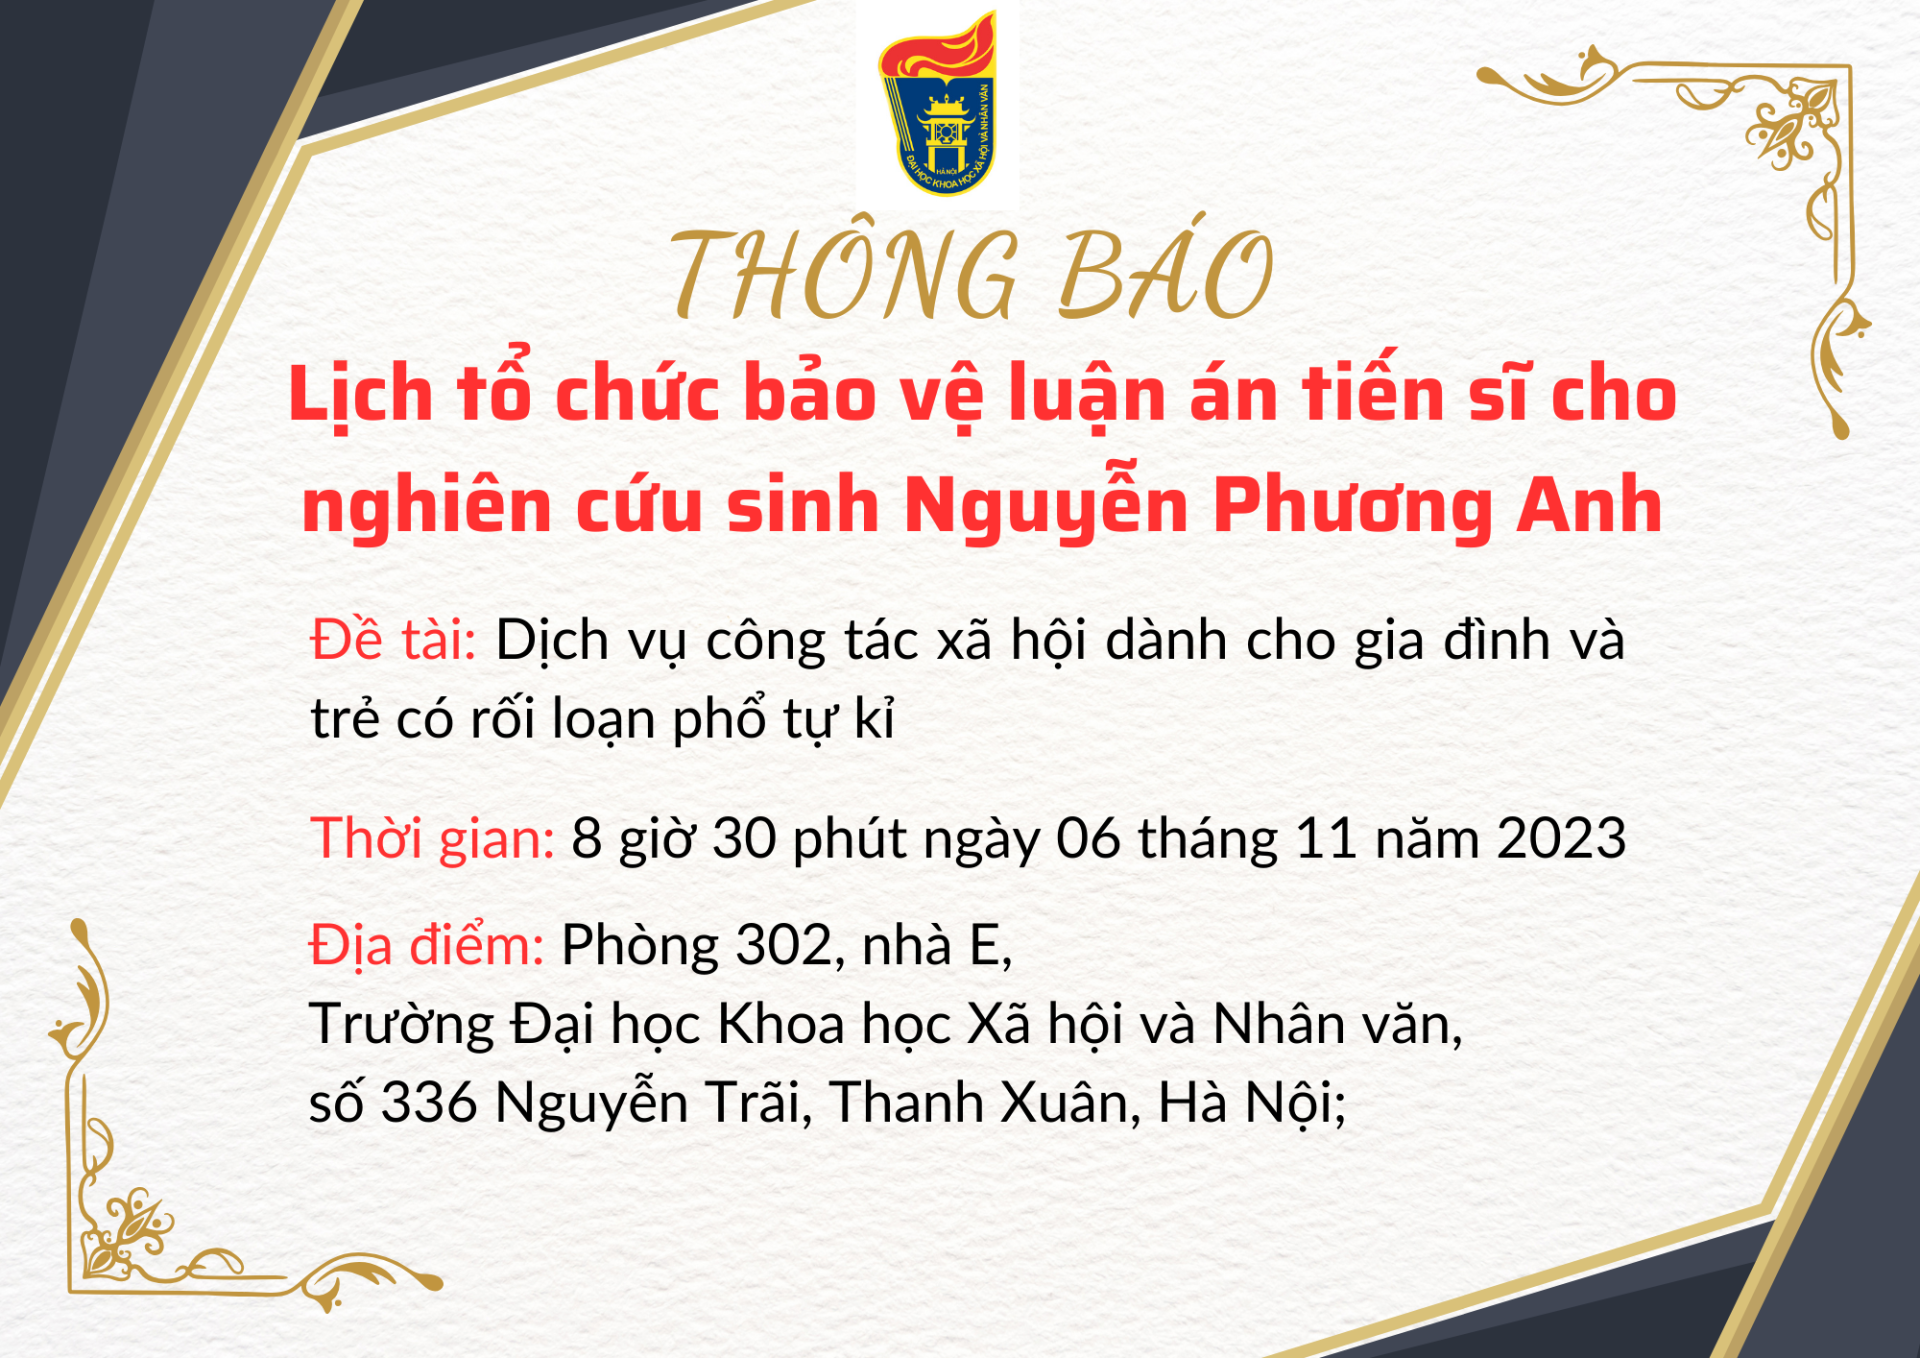 Thông báo lịch tổ chức bảo vệ luận án tiến sĩ cho nghiên cứu sinh Nguyễn Phương Anh